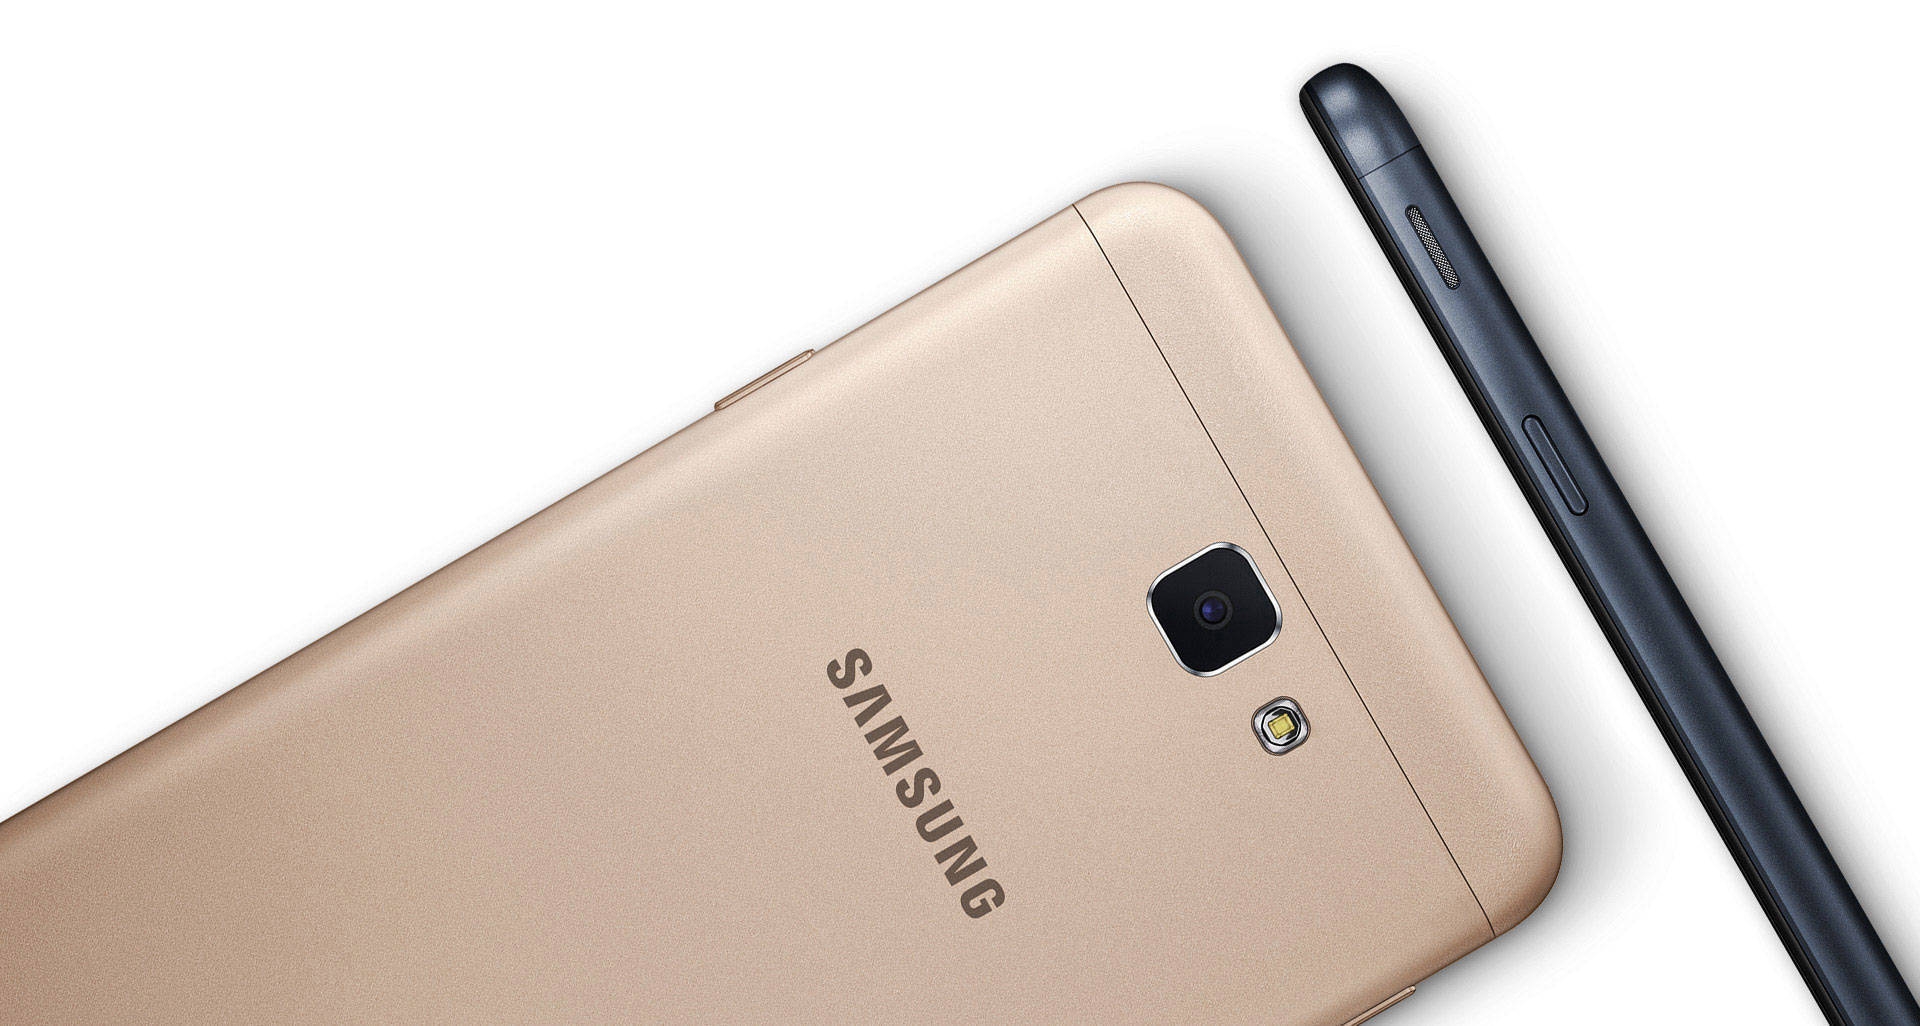 Samsung galaxy J7 prime prix maroc,jumia.ma